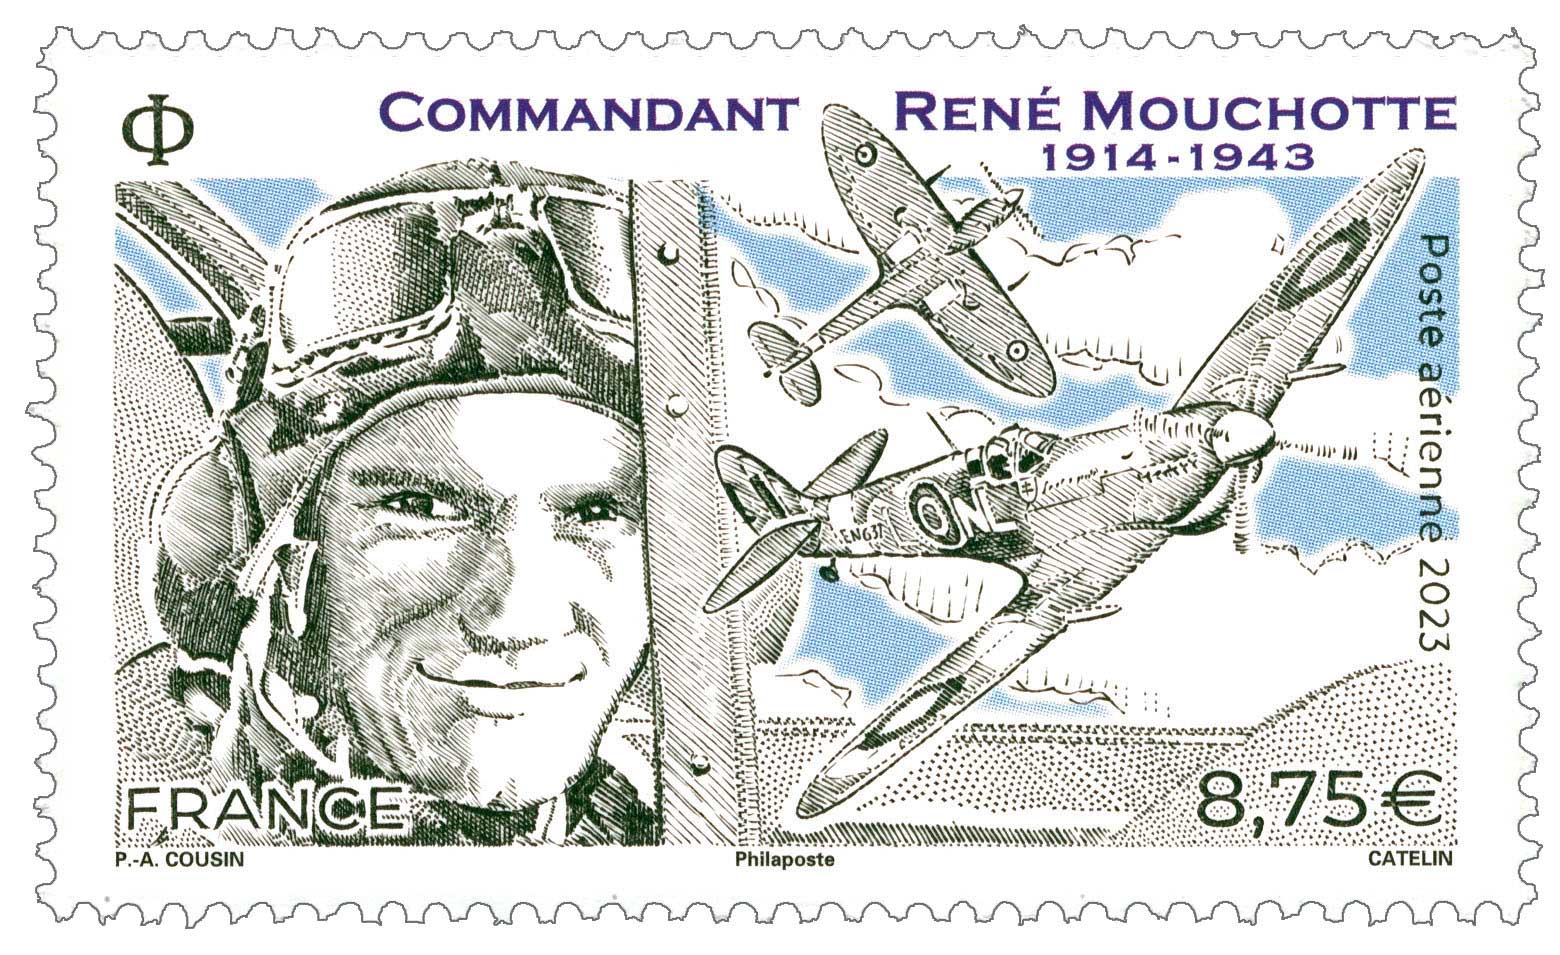 COMMANDANT RENÉ MOUCHOTTE 1914 - 1943